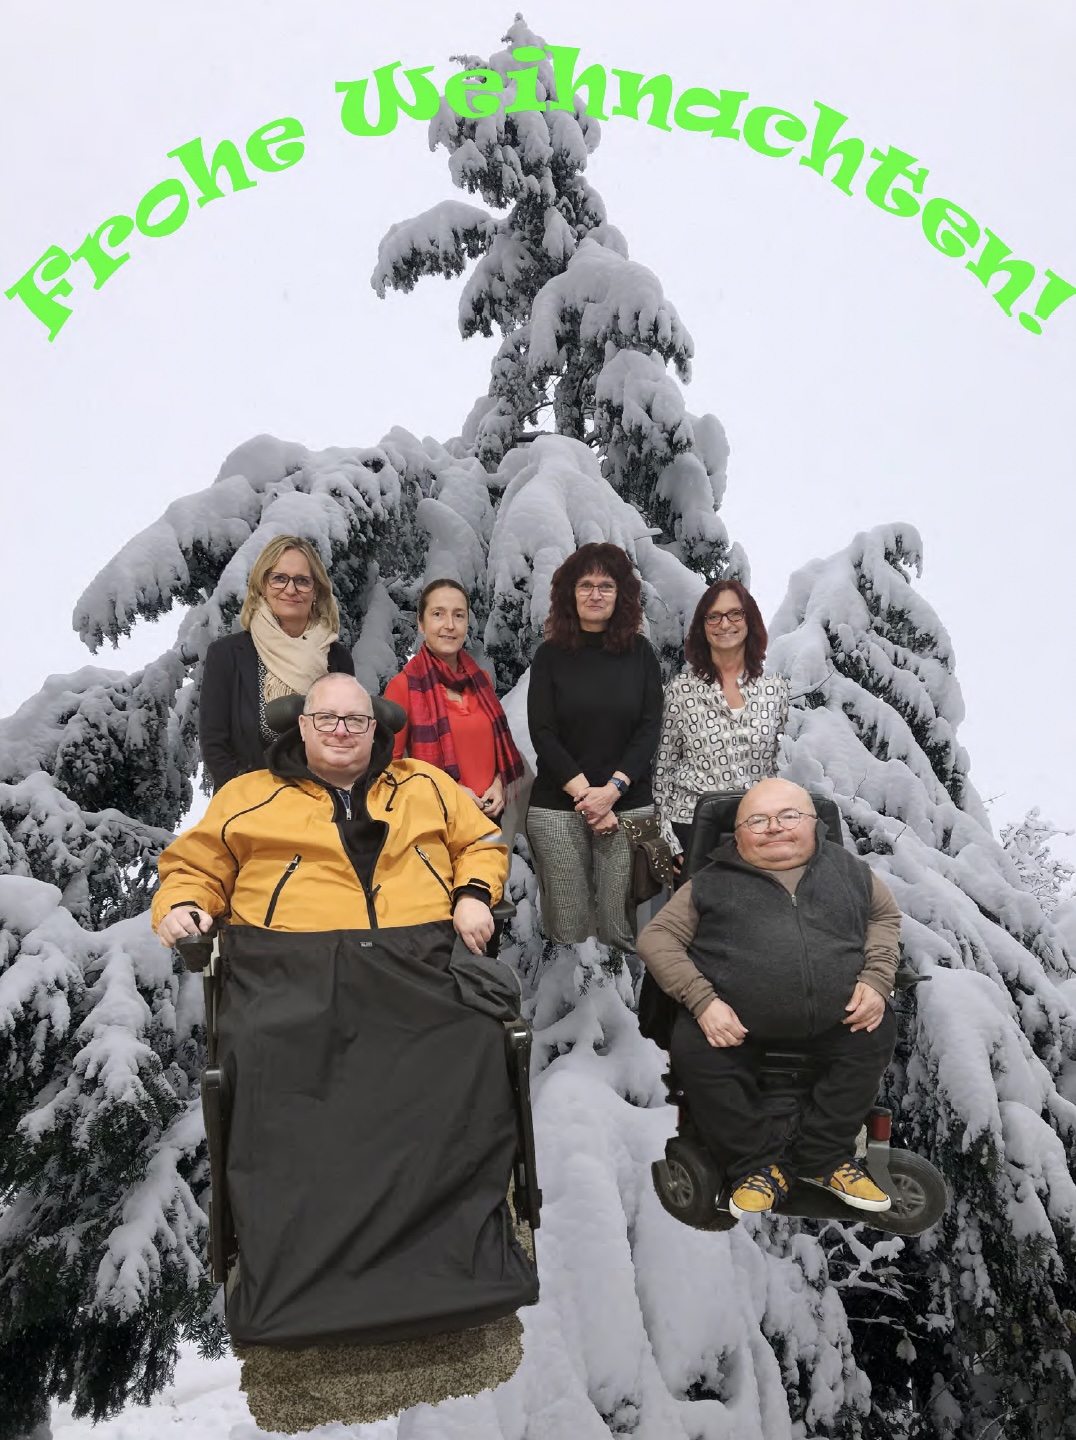 Von links nach rechts sind Cornelia von Pappenheim, Michael Hausmanninger, Anja Kleine, Nadja Rackwitz-Ziegler, Susanne Lang und Oswald Utz inmitten einer Schneelandschaft mit schneebedeckten Tannenbäumen zu sehen